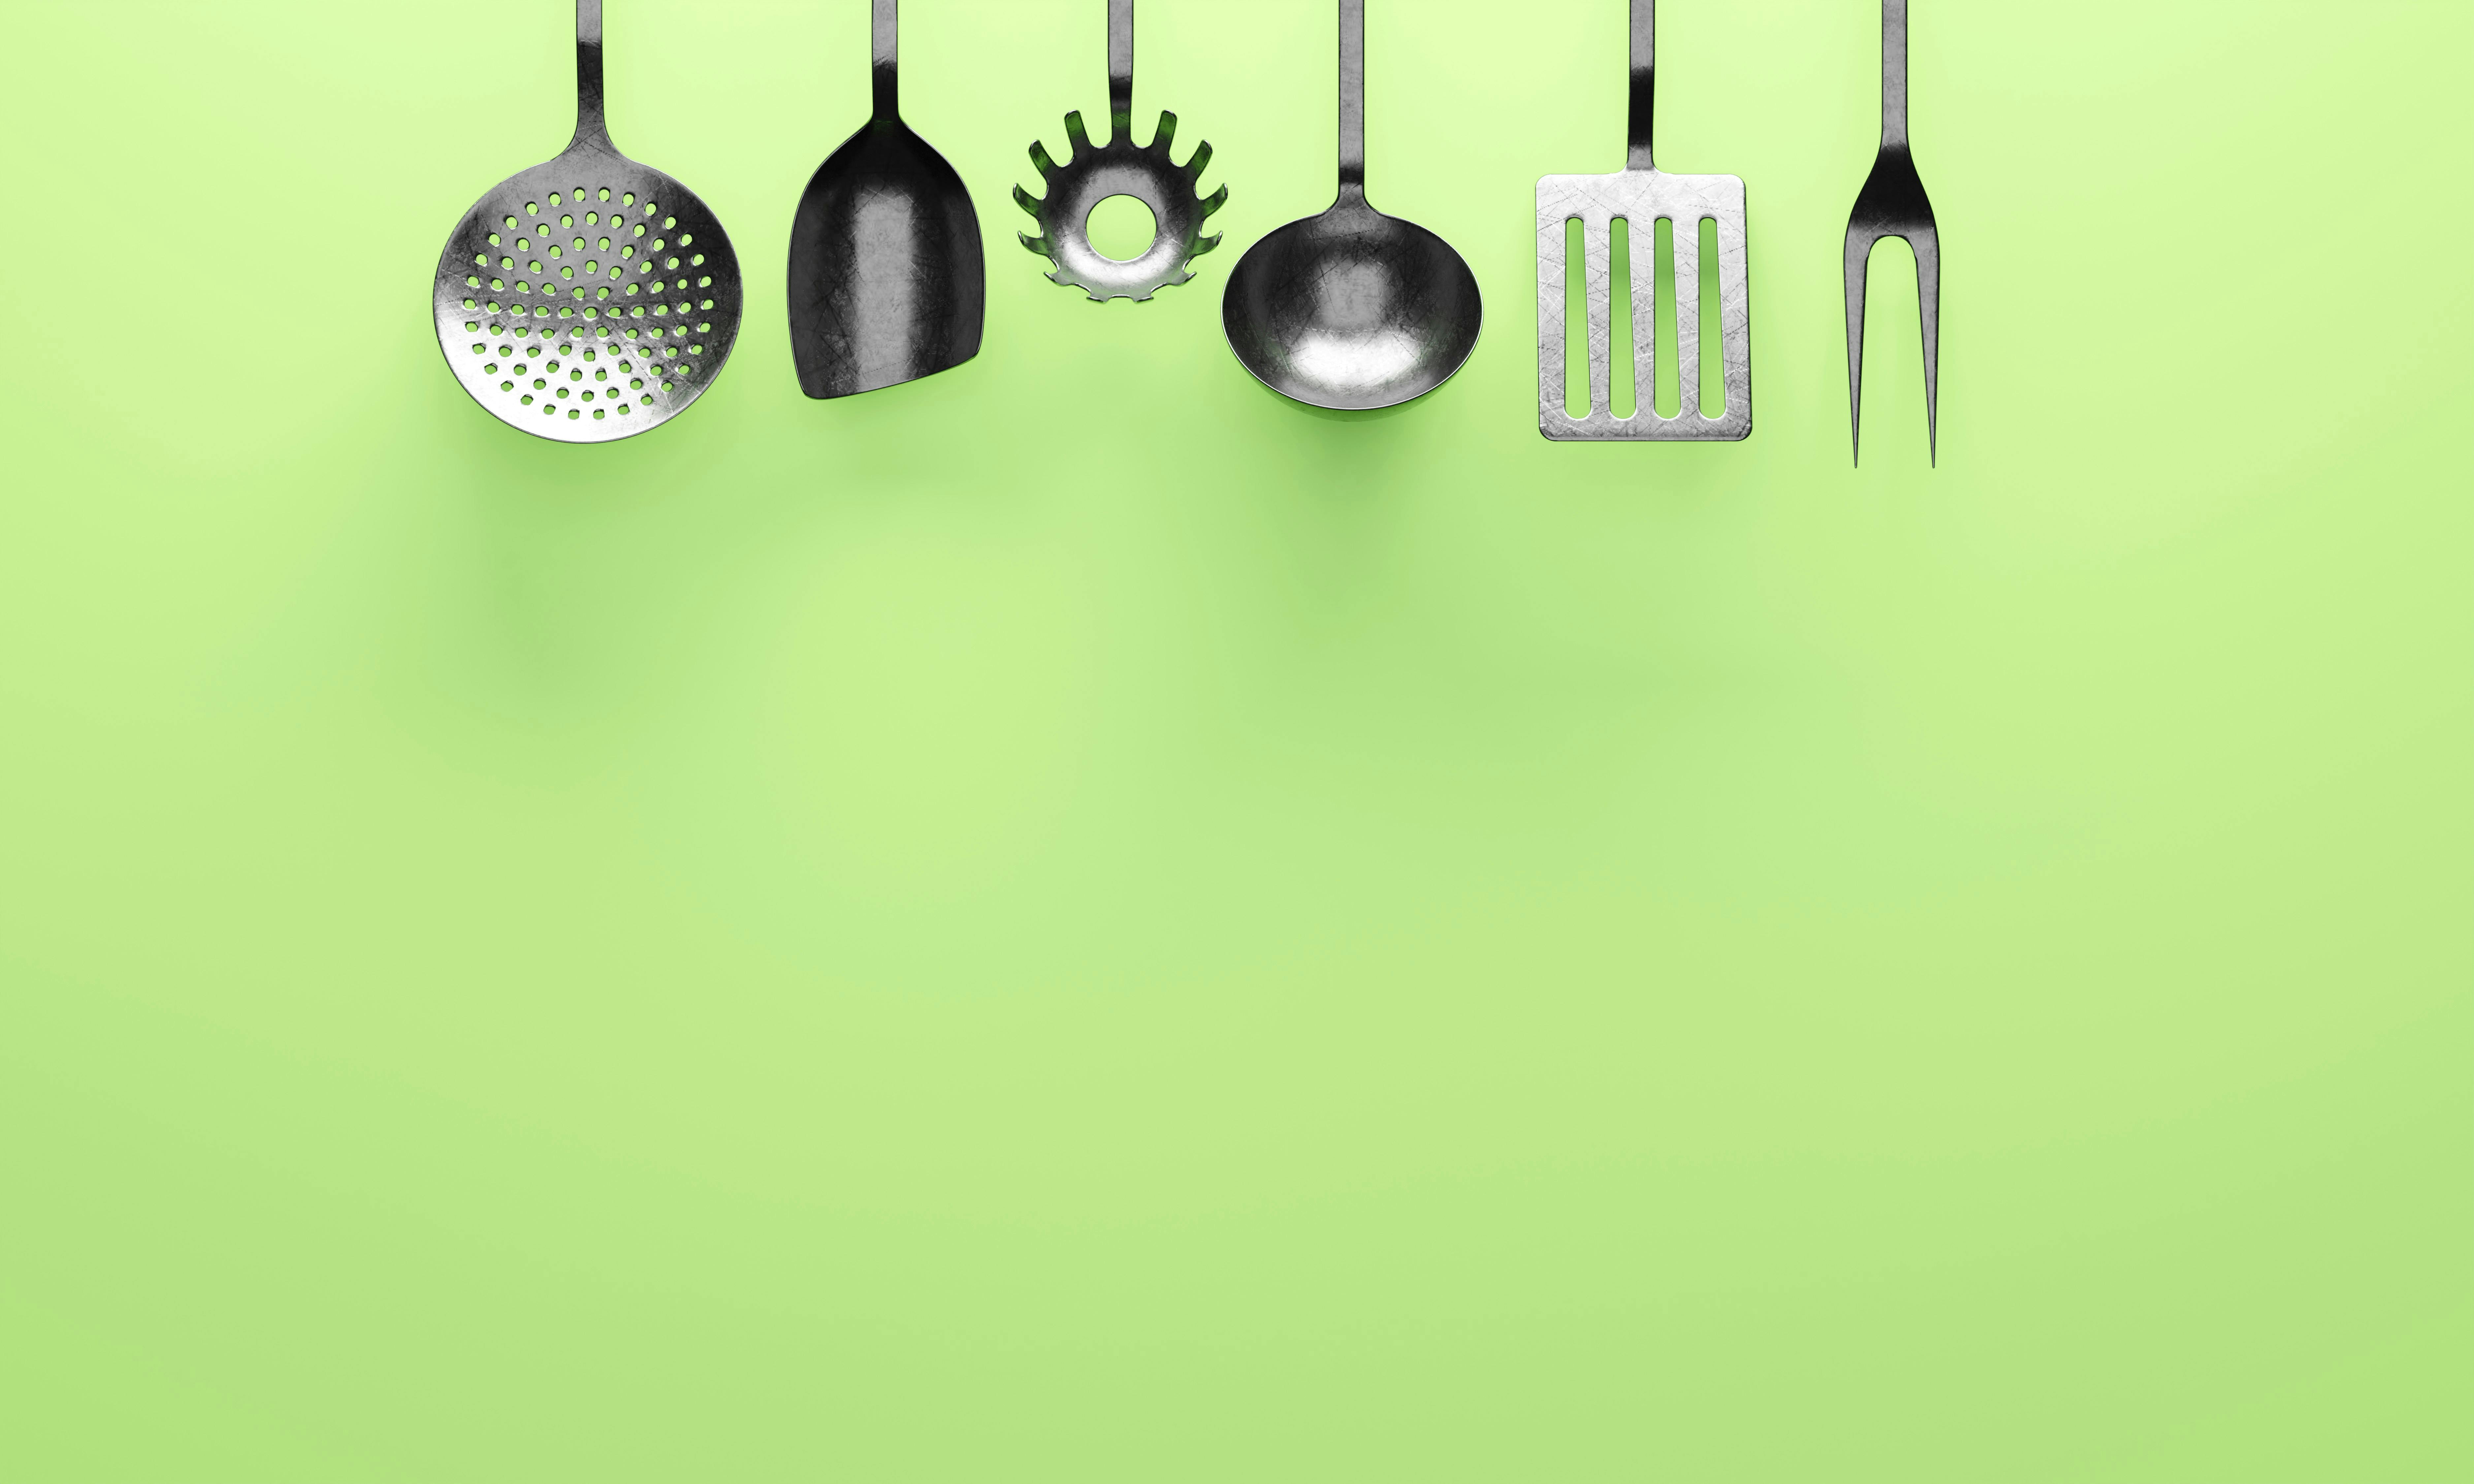 Steel cooking utensils | Source: Pexels